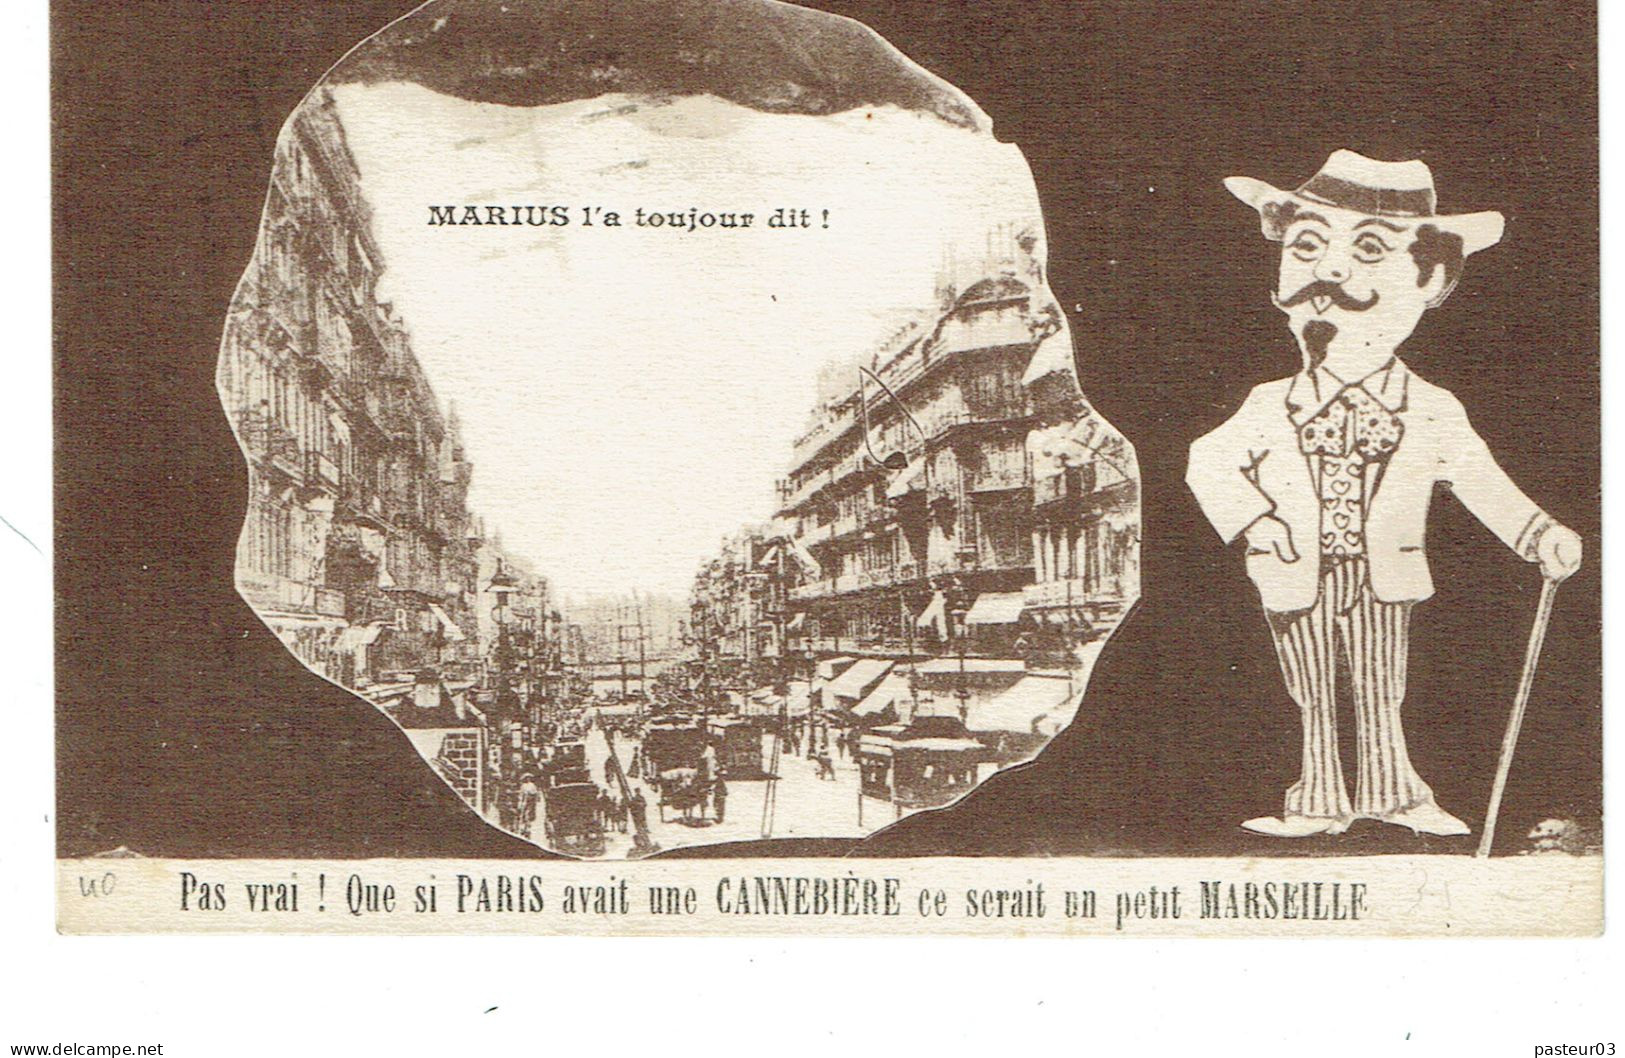 170 X 2 (45) Pasteur 10 C. Provenant De Carnet Avec Bandelette RARE Tarifs Du 01-05-1926 (court) CP < à 5 Mots - 1922-26 Pasteur